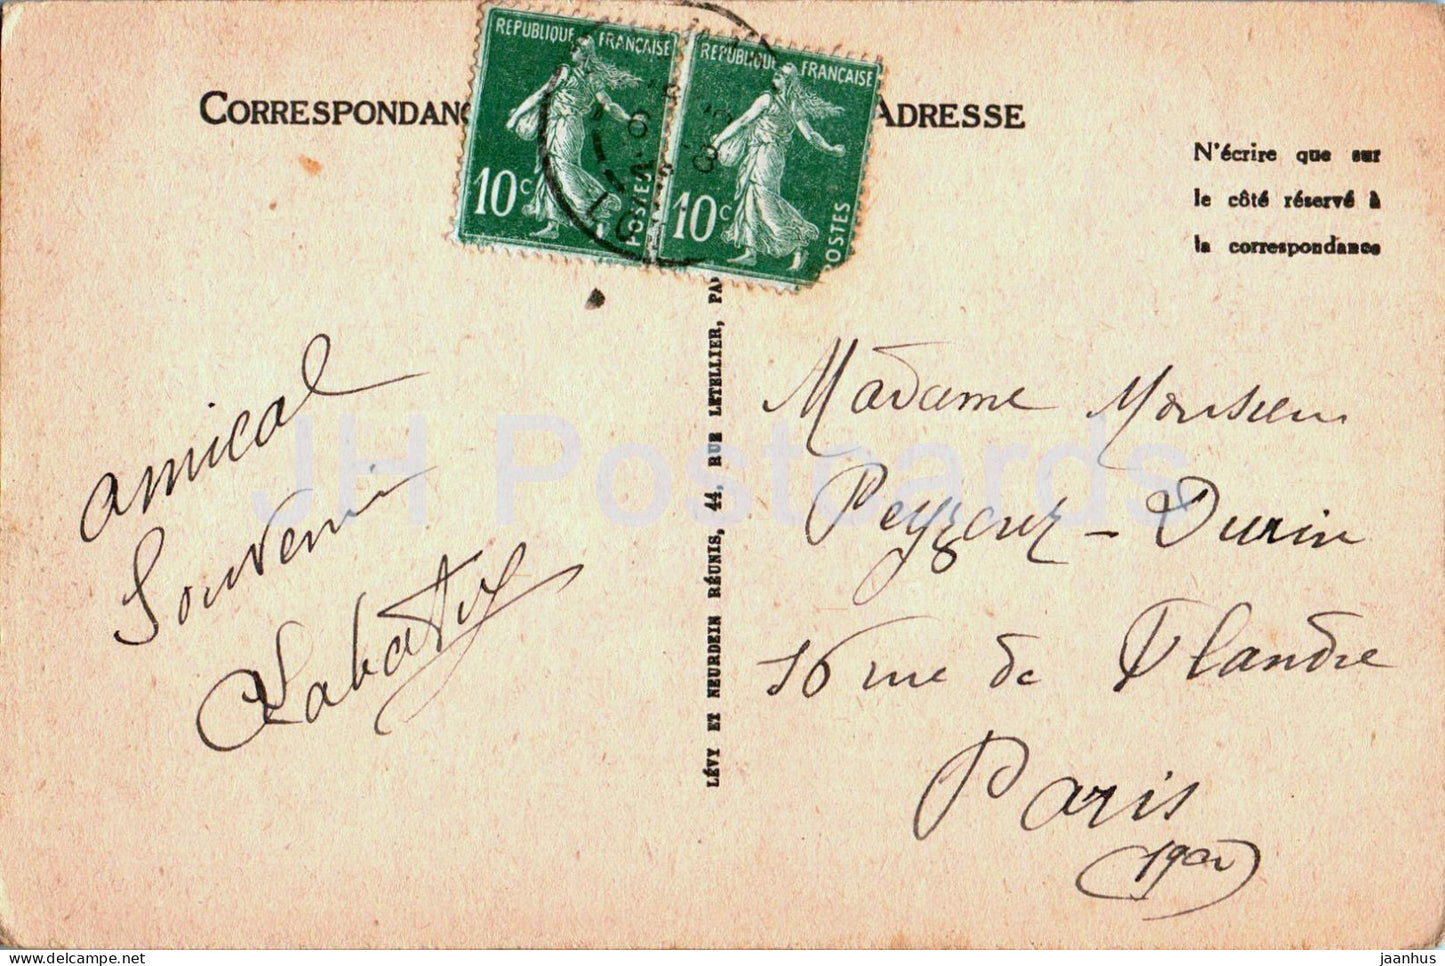 Rocamadour - Prise de la Route D'Arrivee - 31 - alte Postkarte - Frankreich - gebraucht 